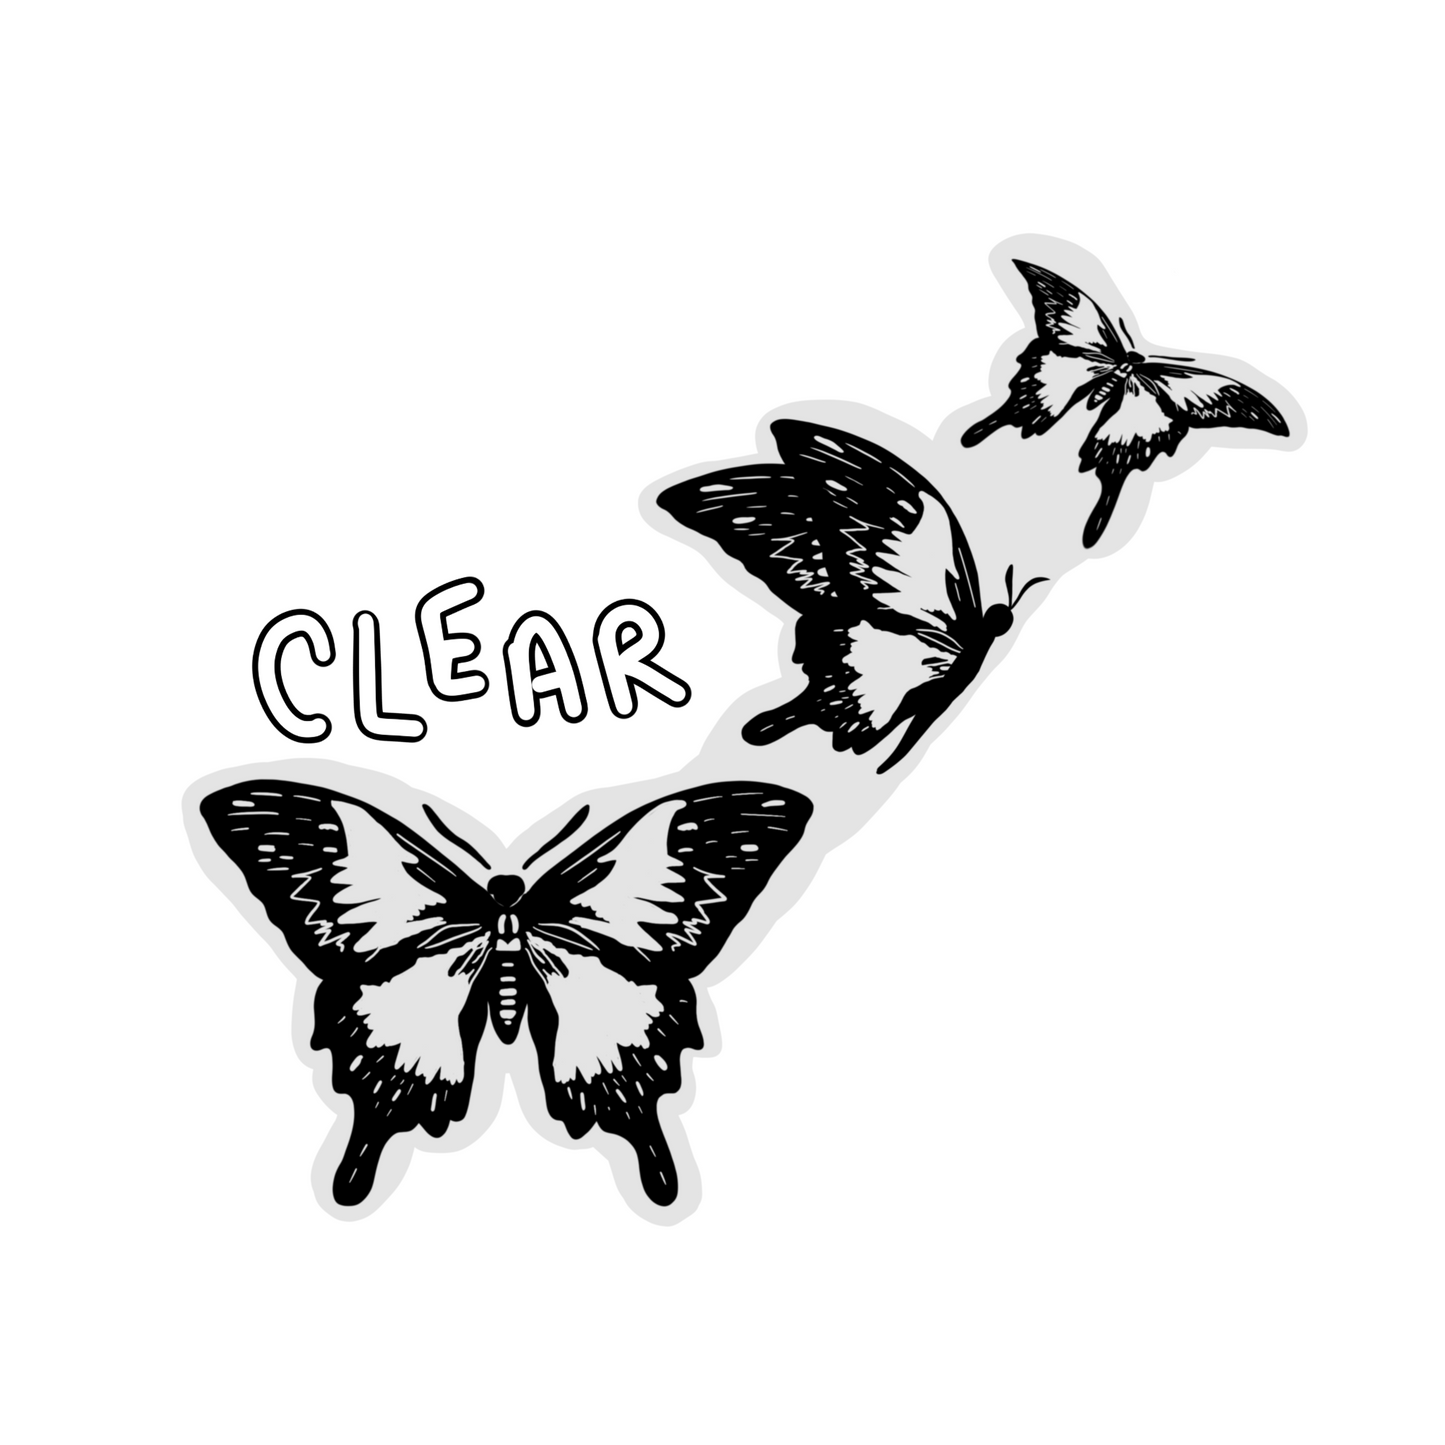 CLEAR 3 Black Butterfly Sticker